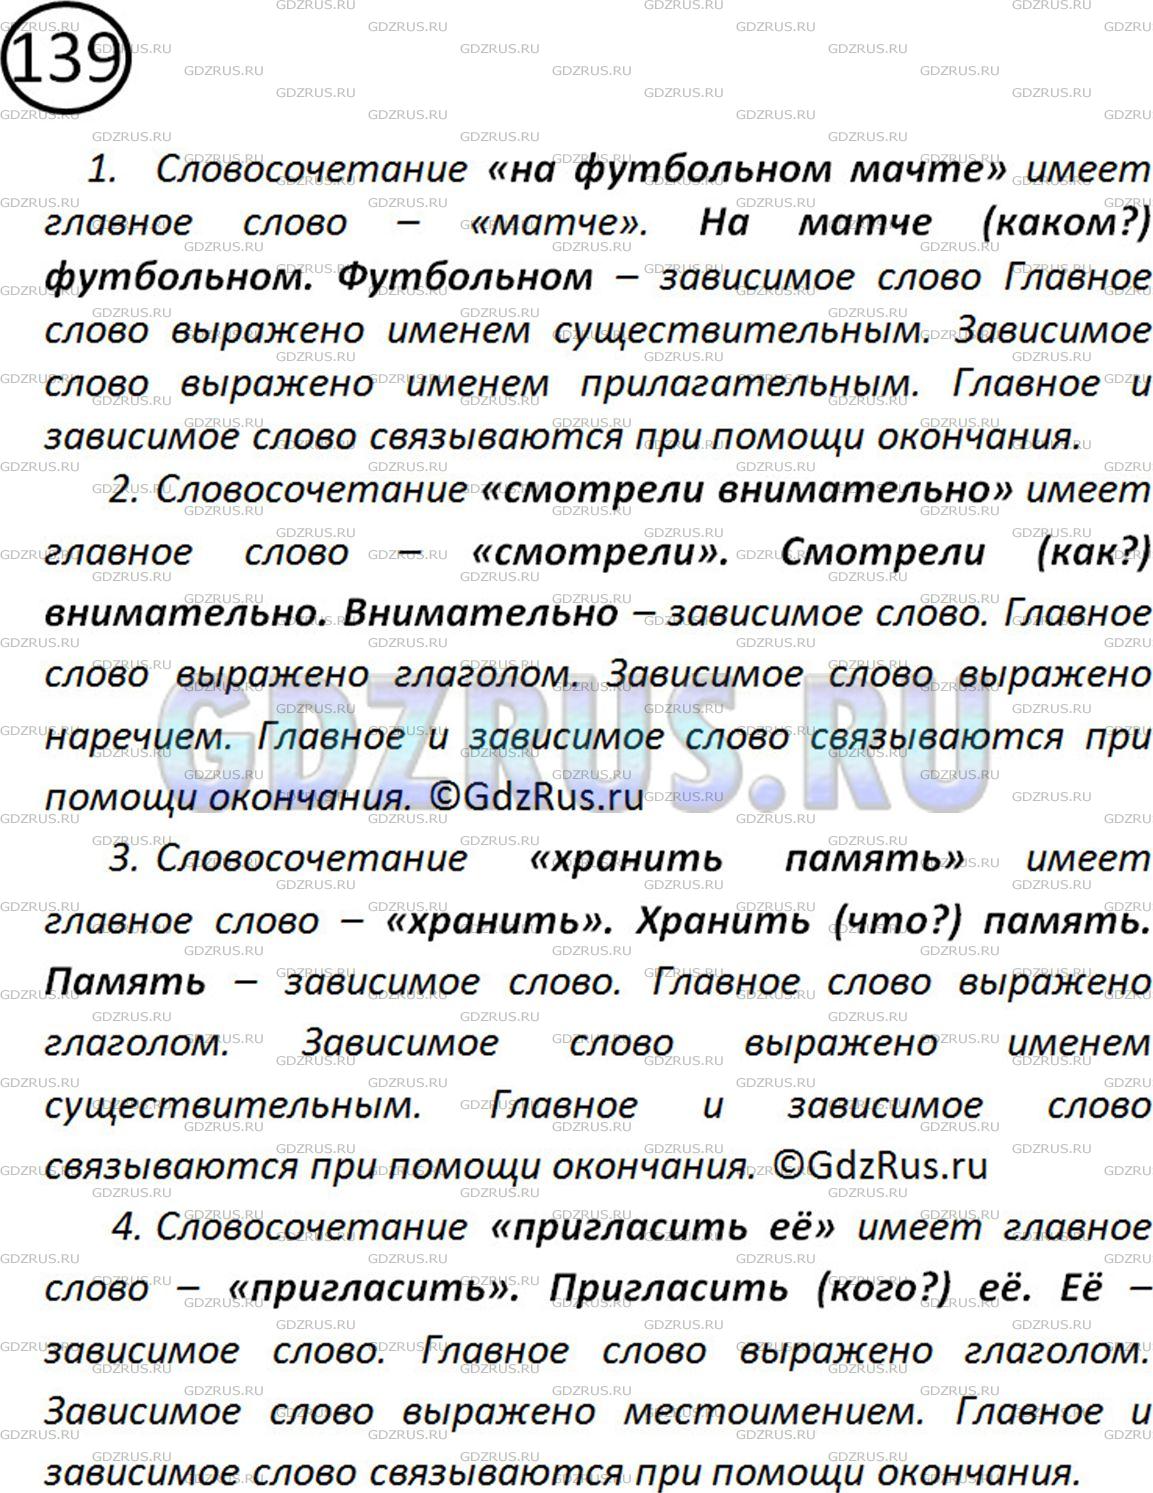 Фото решения 2: Номер №139 из ГДЗ по Русскому языку 5 класс: Ладыженская Т.А. 2012г.